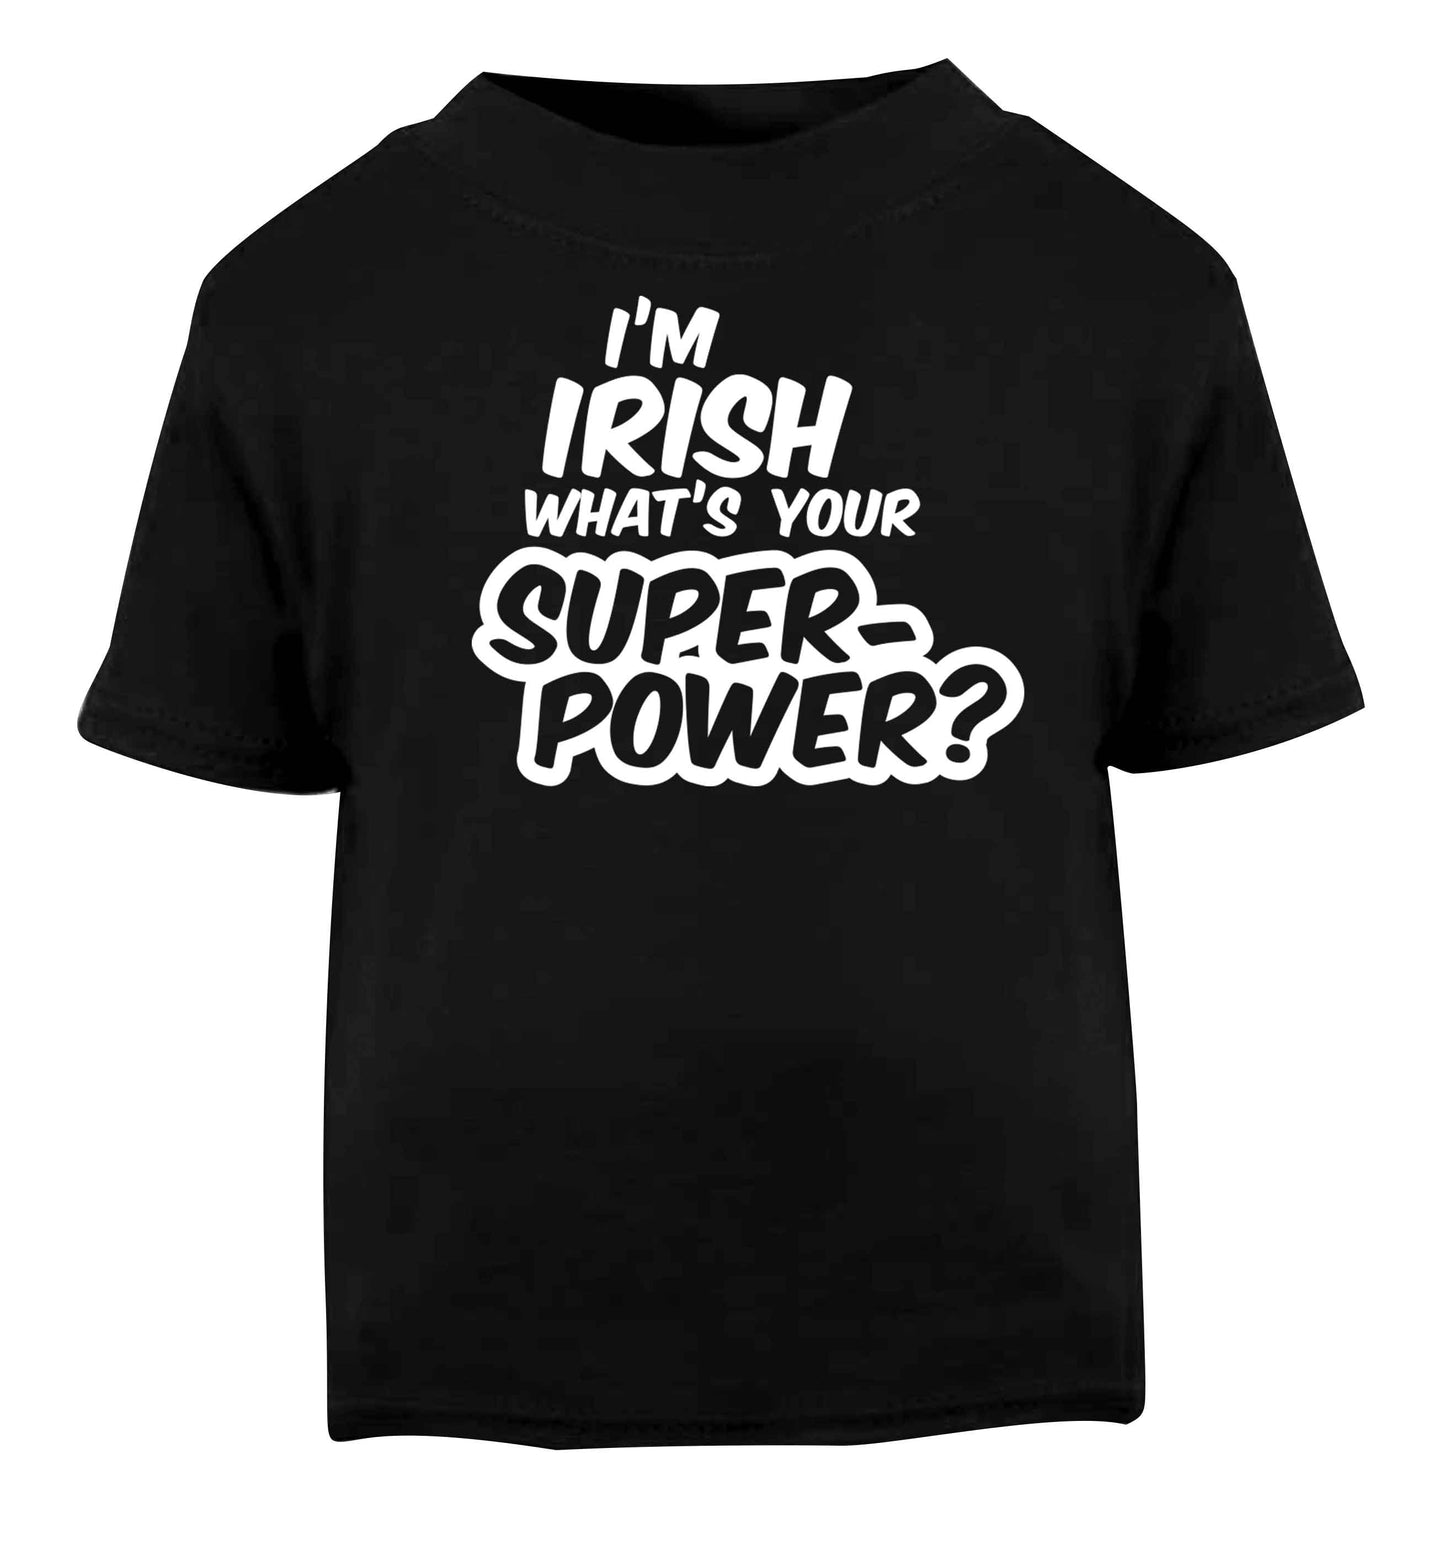 I'm Irish what's your superpower? Black baby toddler Tshirt 2 years